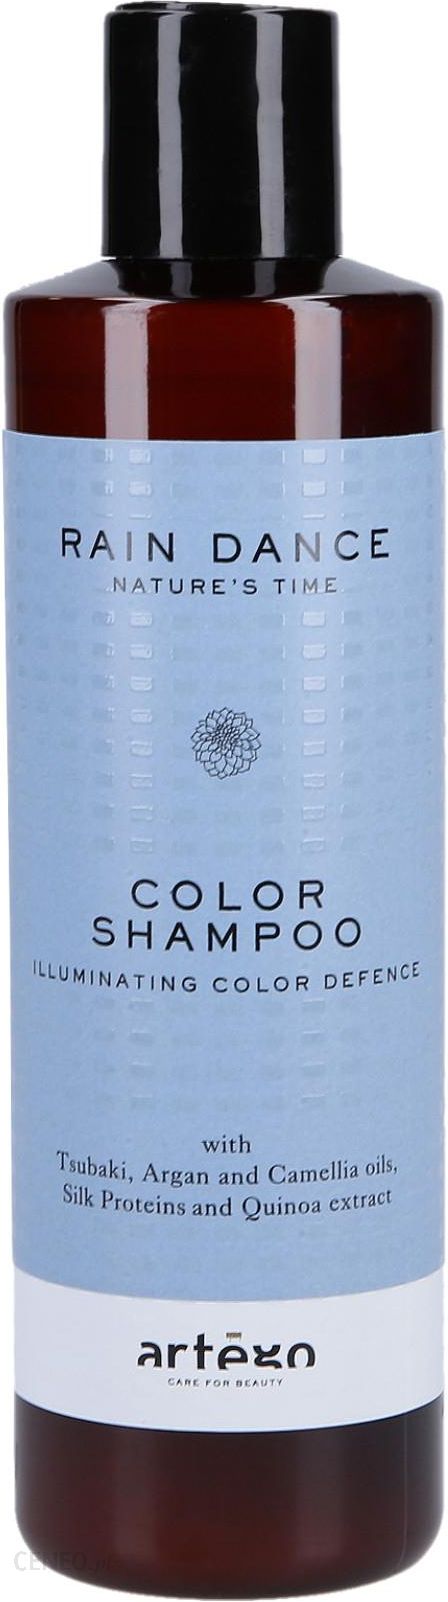 szampon artego 51 neutralizujący żółte refleksy ceneo